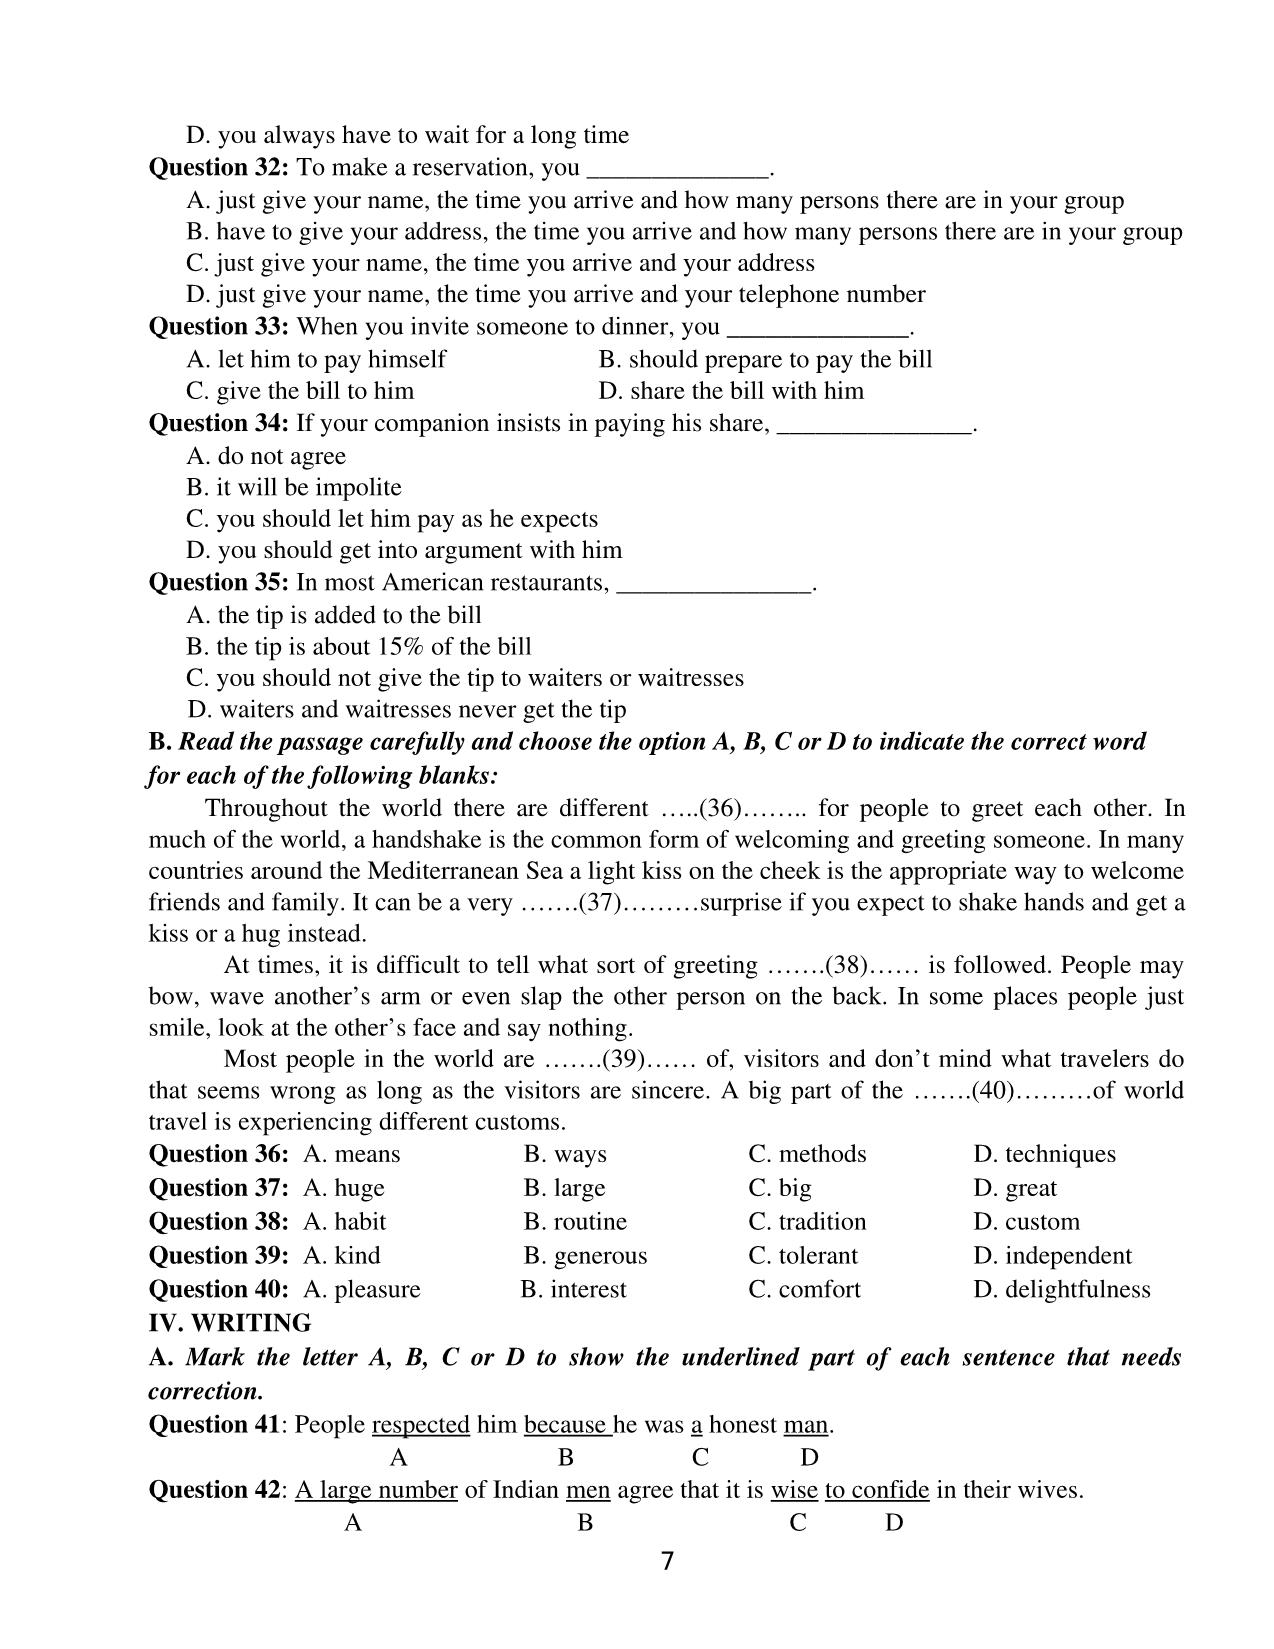 Tổng hợp các bài tập môn tiếng Anh Trung học Phổ thông trang 7